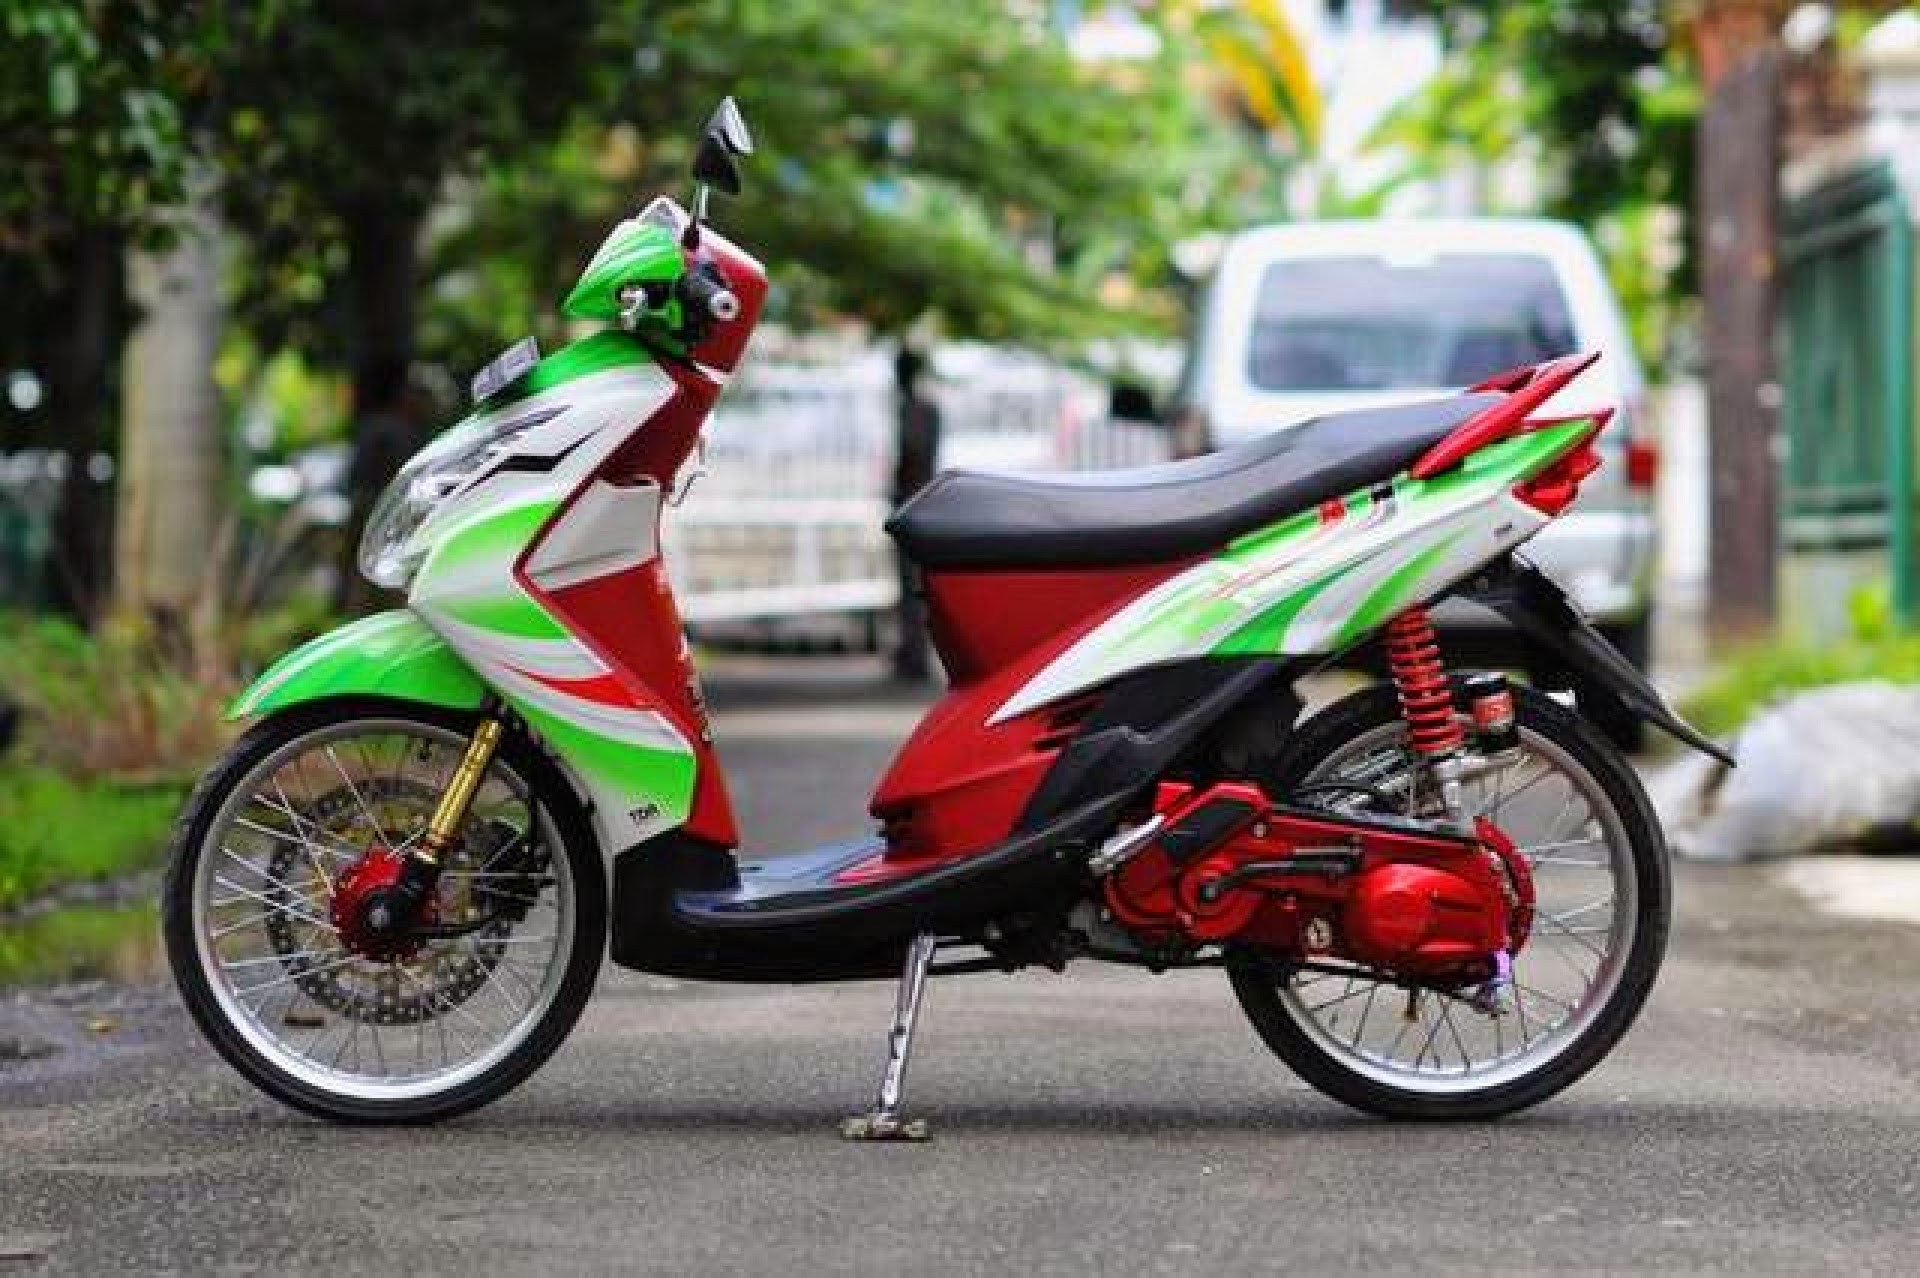  Modifikasi Motor Yamaha Mio Fino Sporty Thecitycyclist